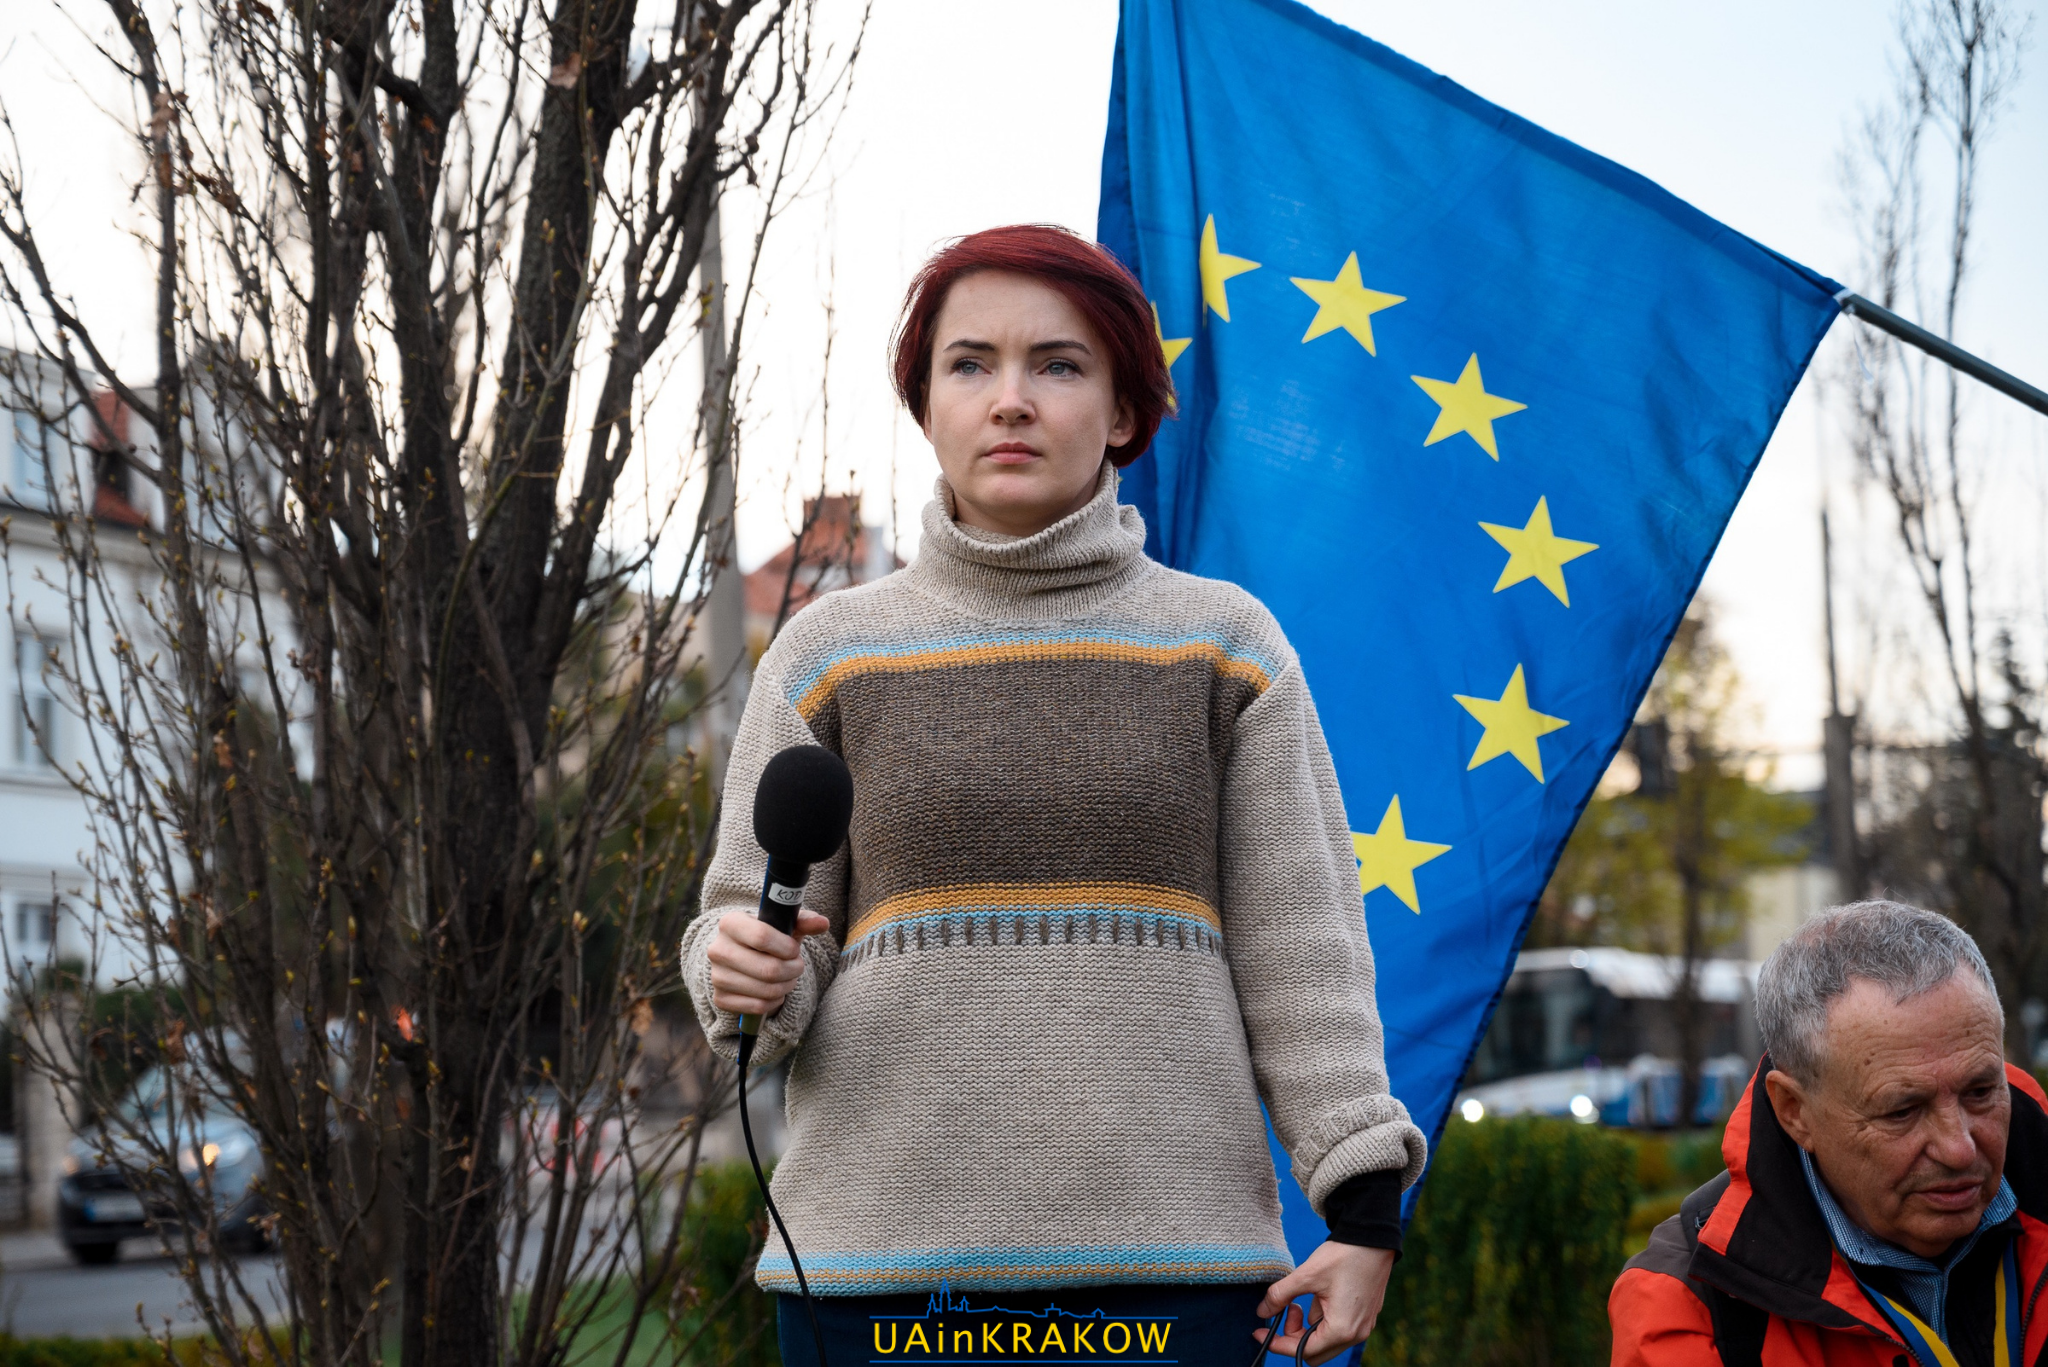 У Кракові відбувася марш солідарності з Україною  [ФОТО] 6 2